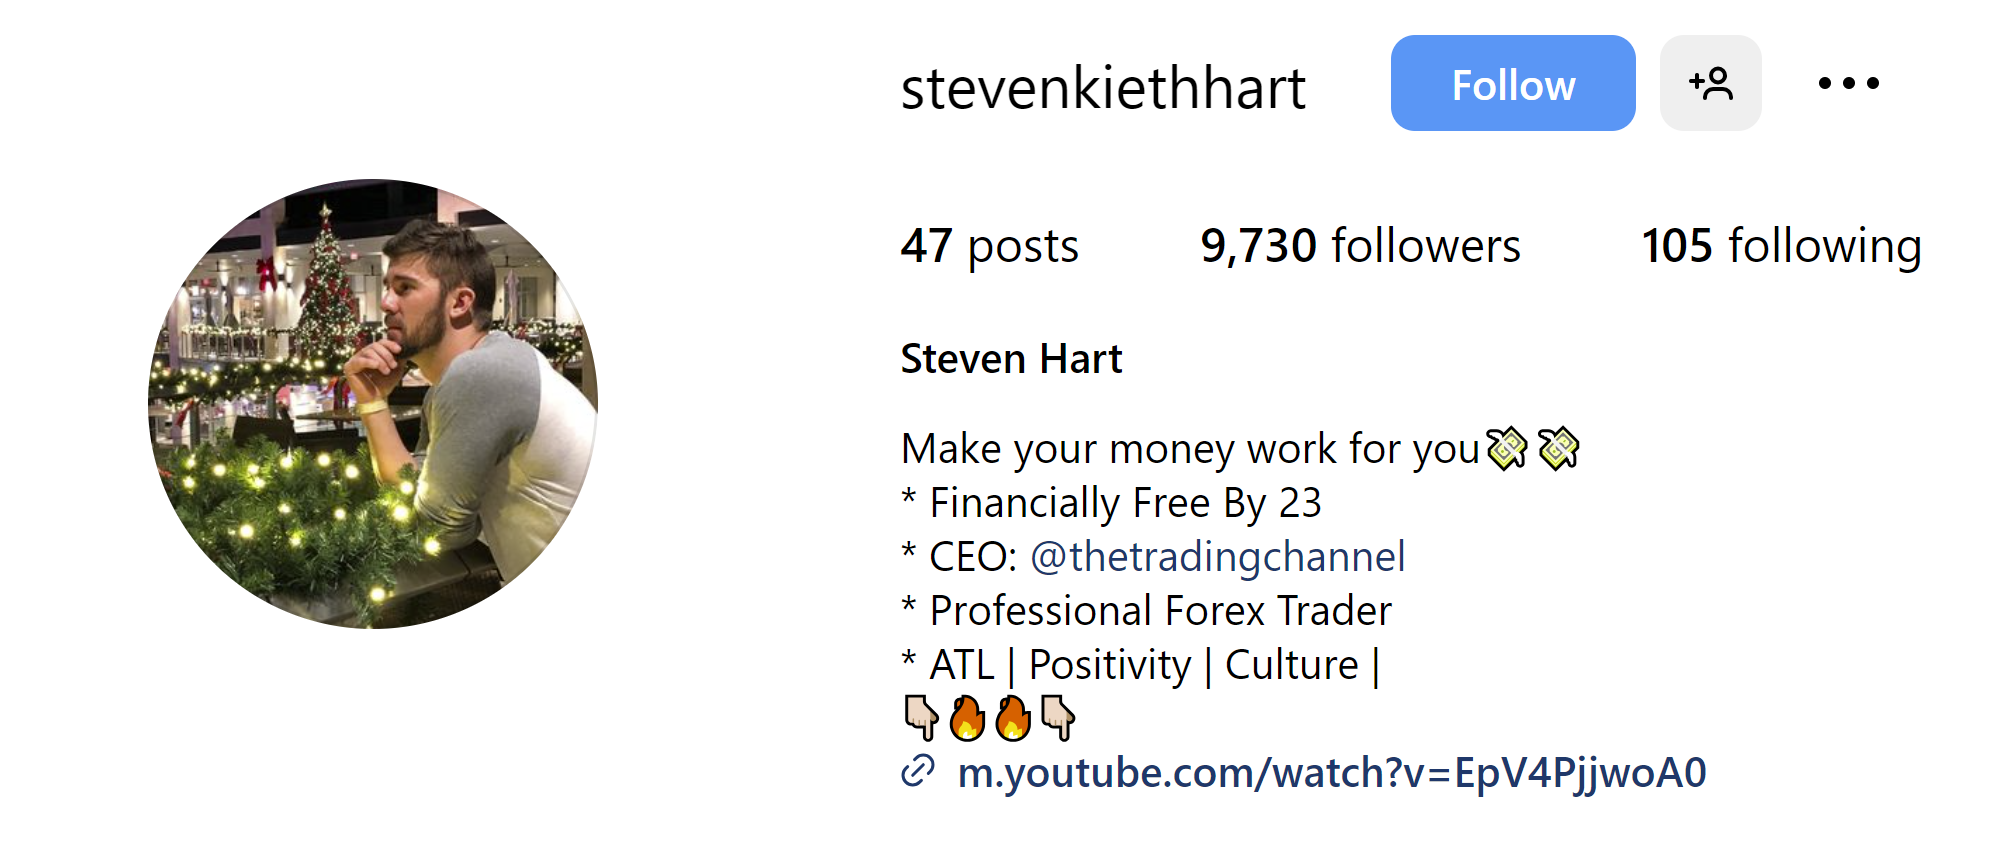 Who Is Steven Hart